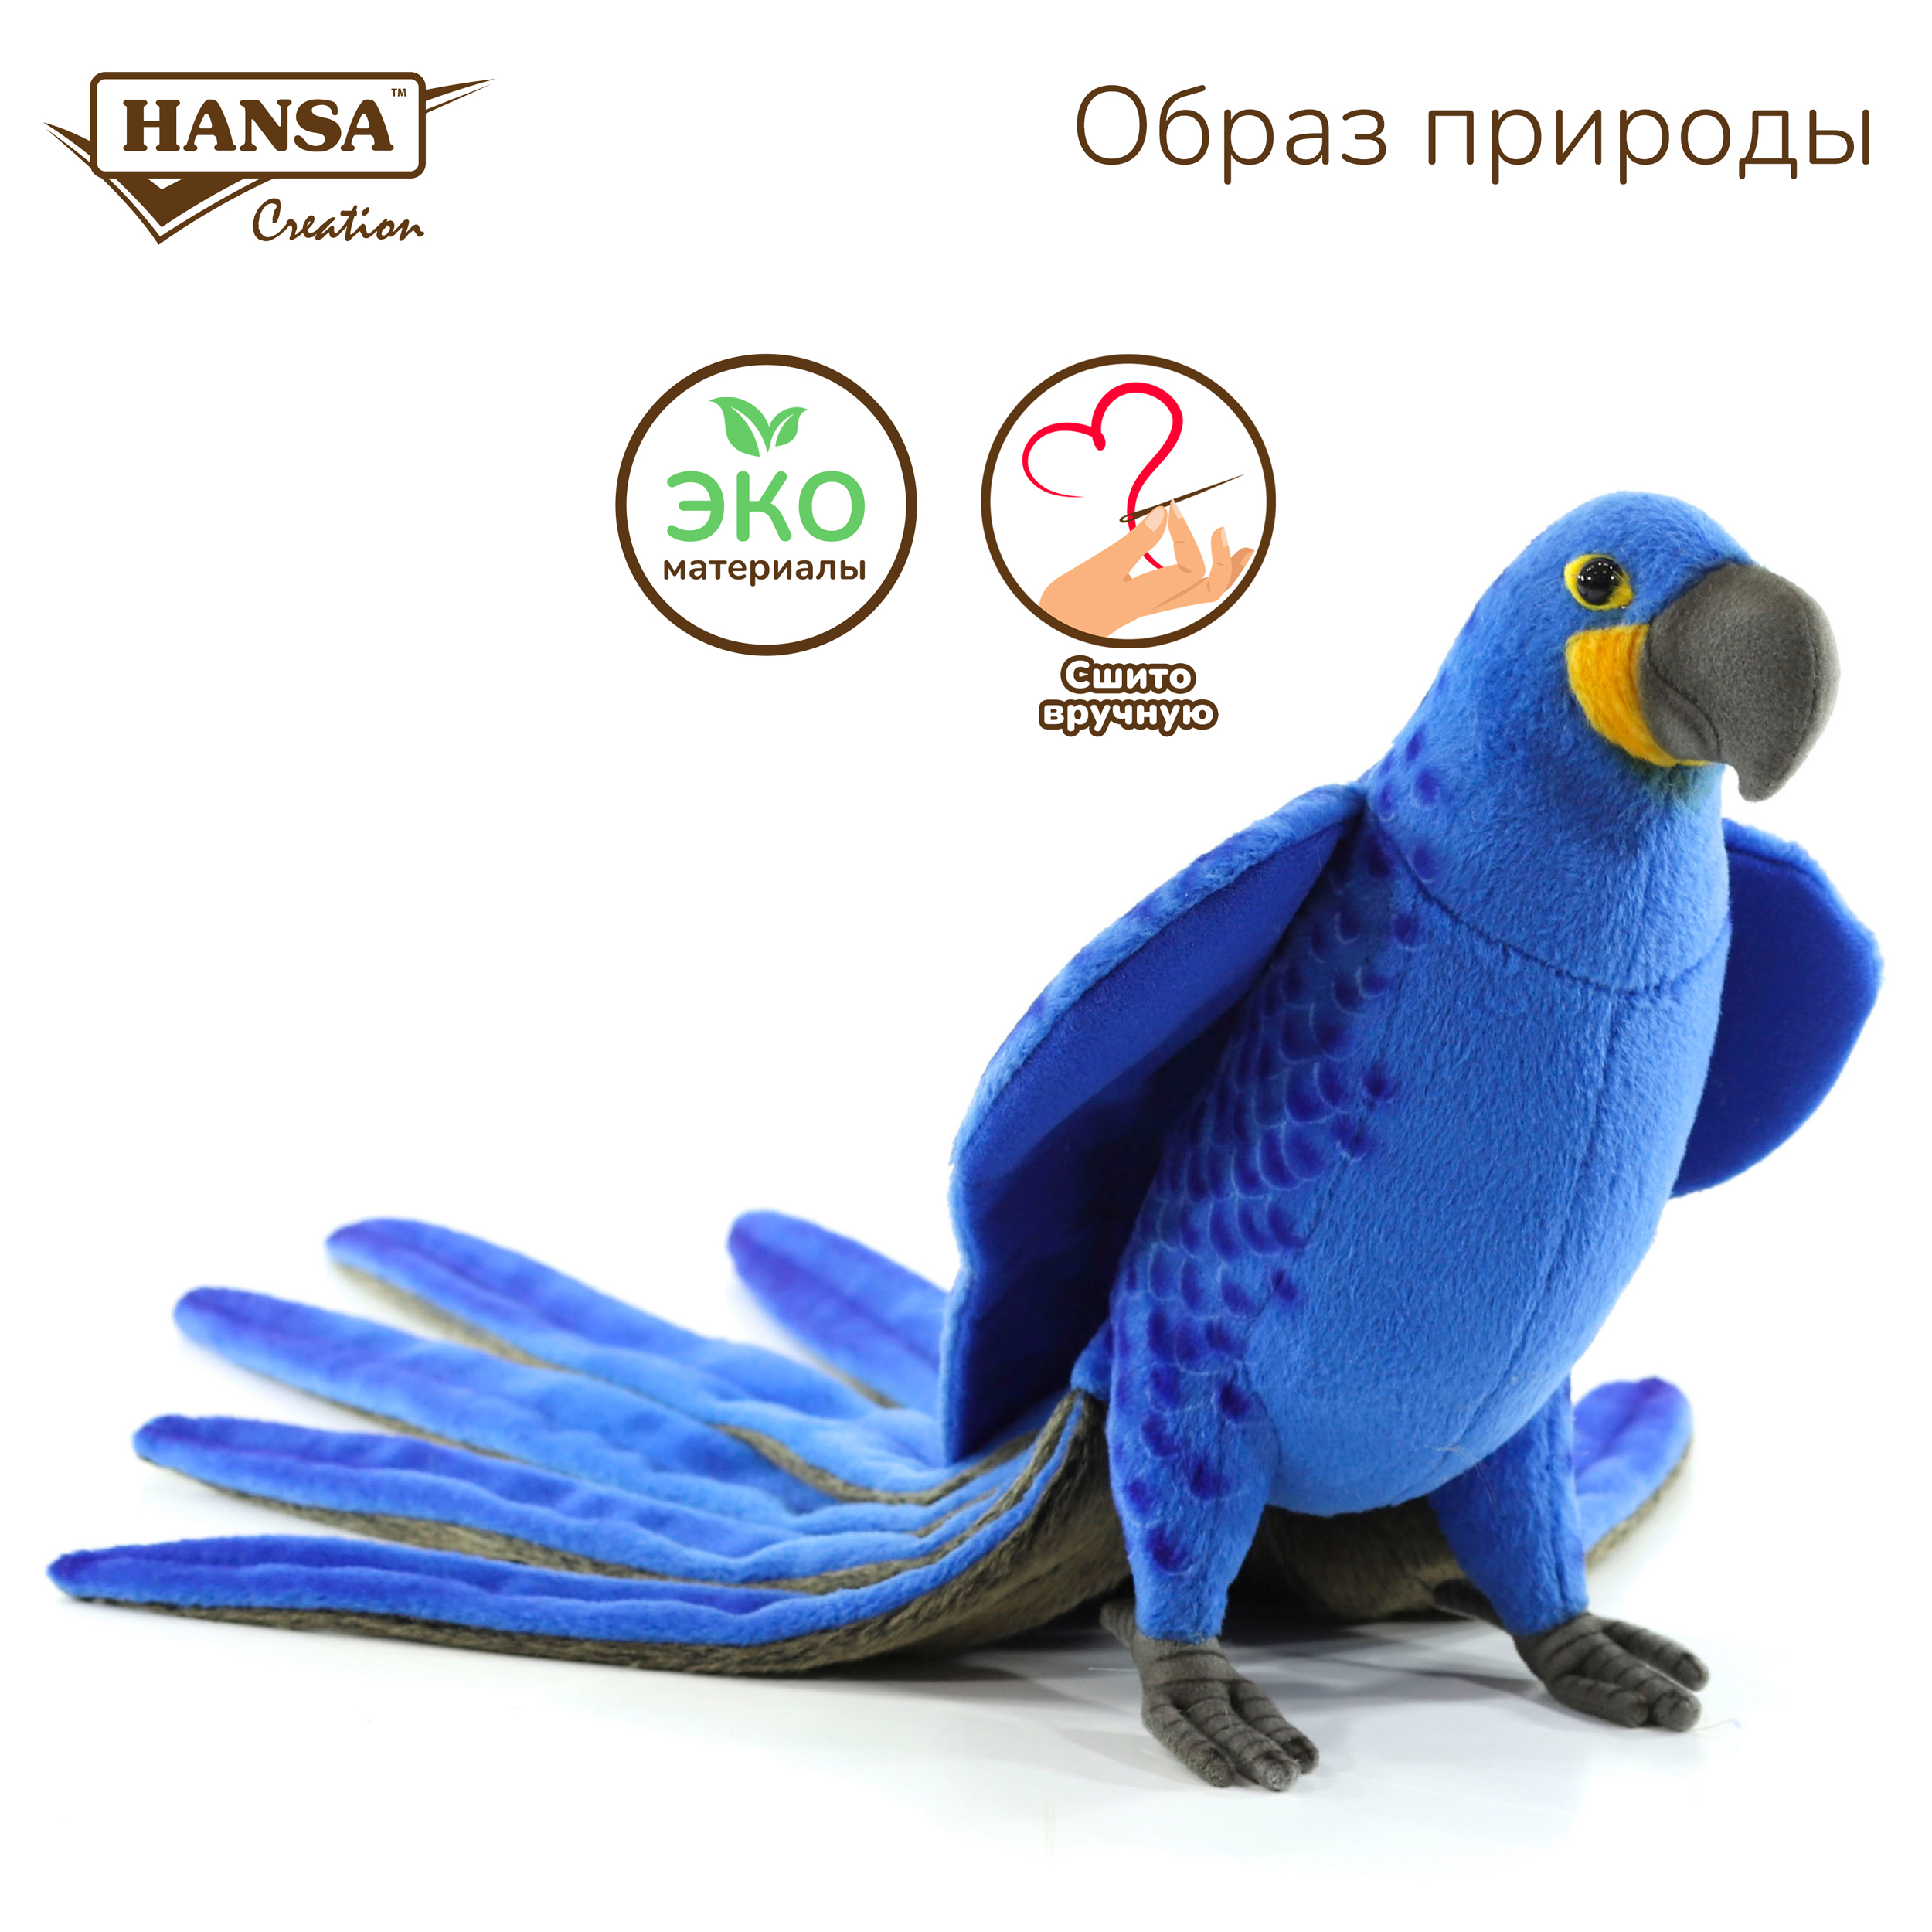 Реалистичная мягкая игрушка Hansa Creation попугай Гиацинтовый ара, 50 см